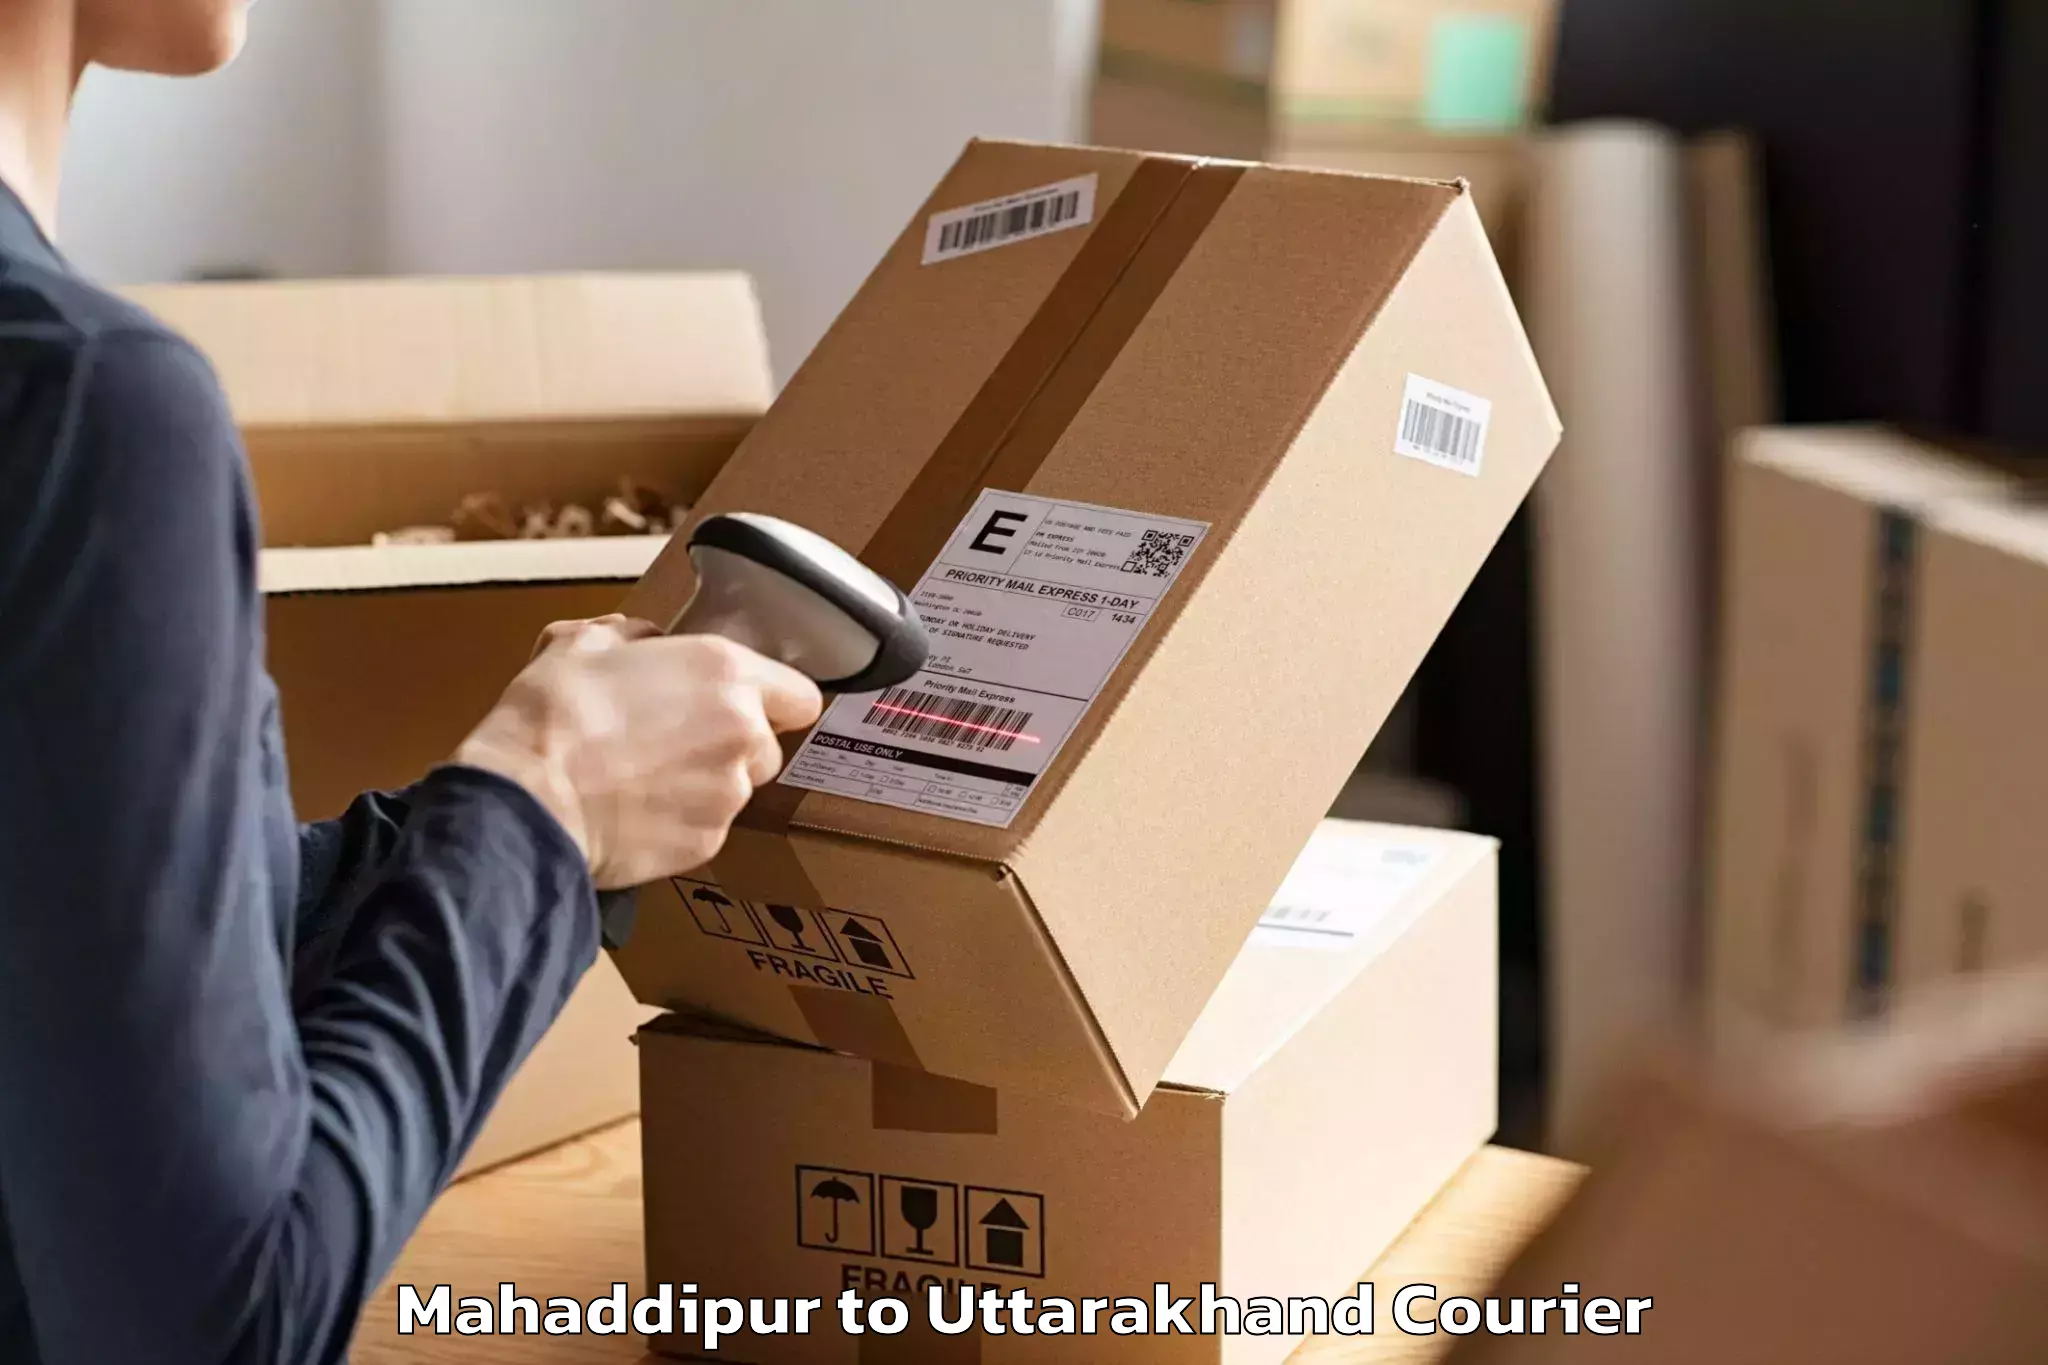 Residential furniture transport Mahaddipur to Uttarakhand